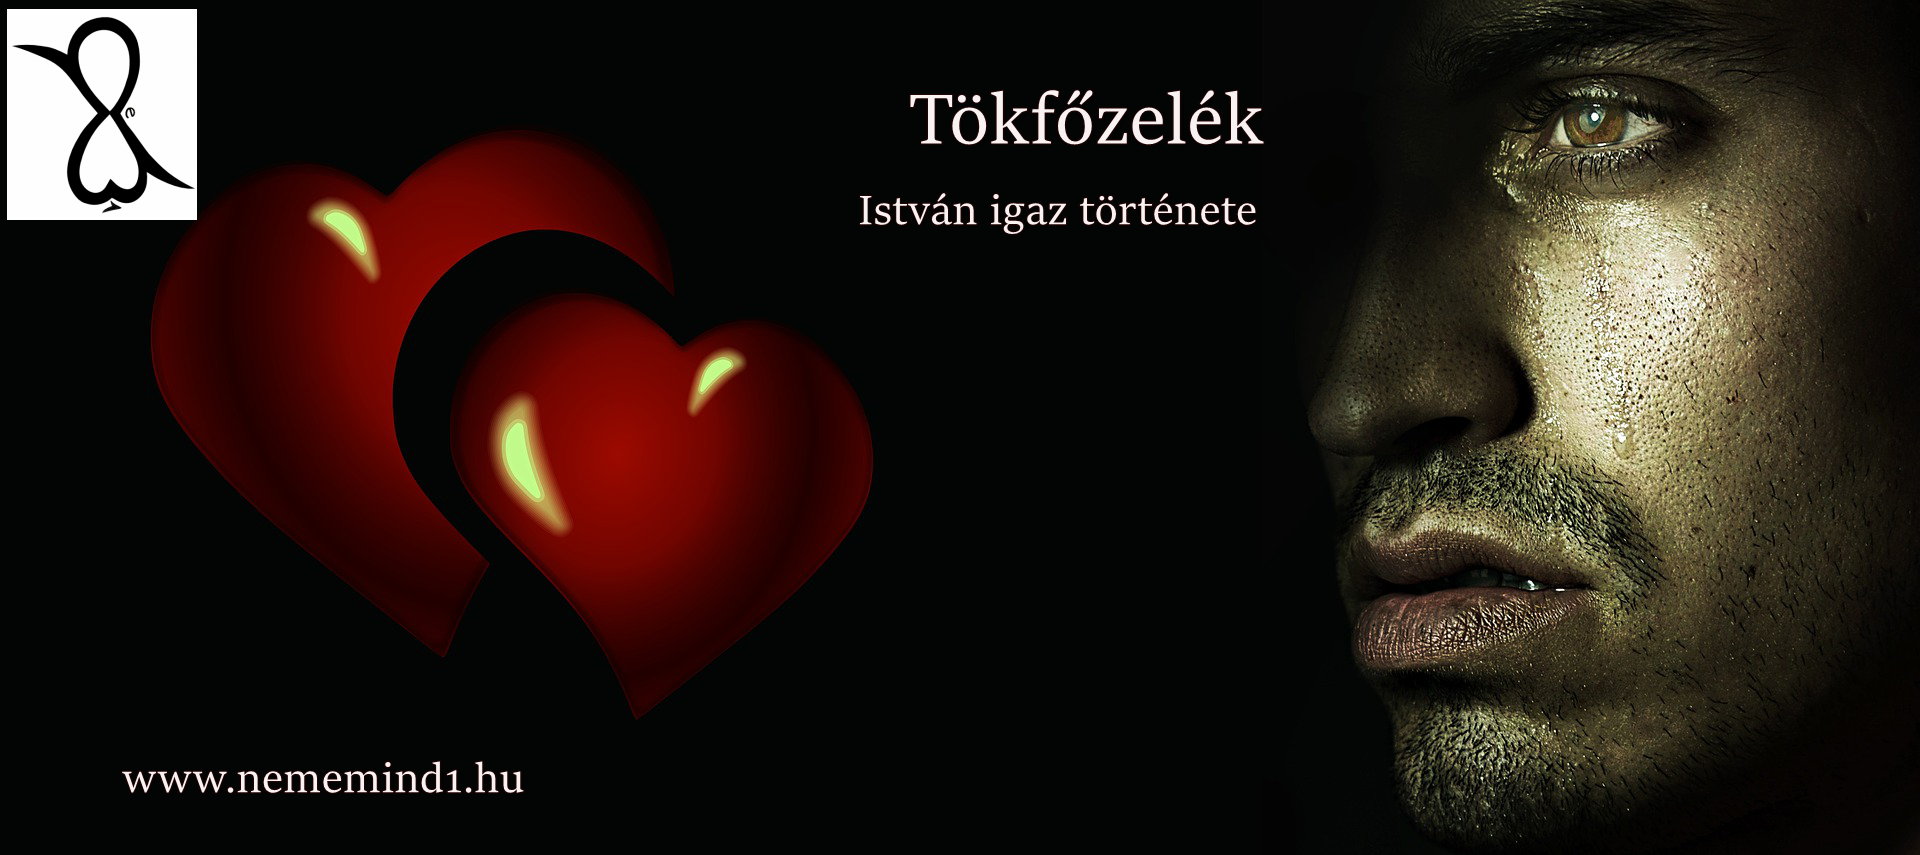 You are currently viewing Tökfőzelék (István igaz története)